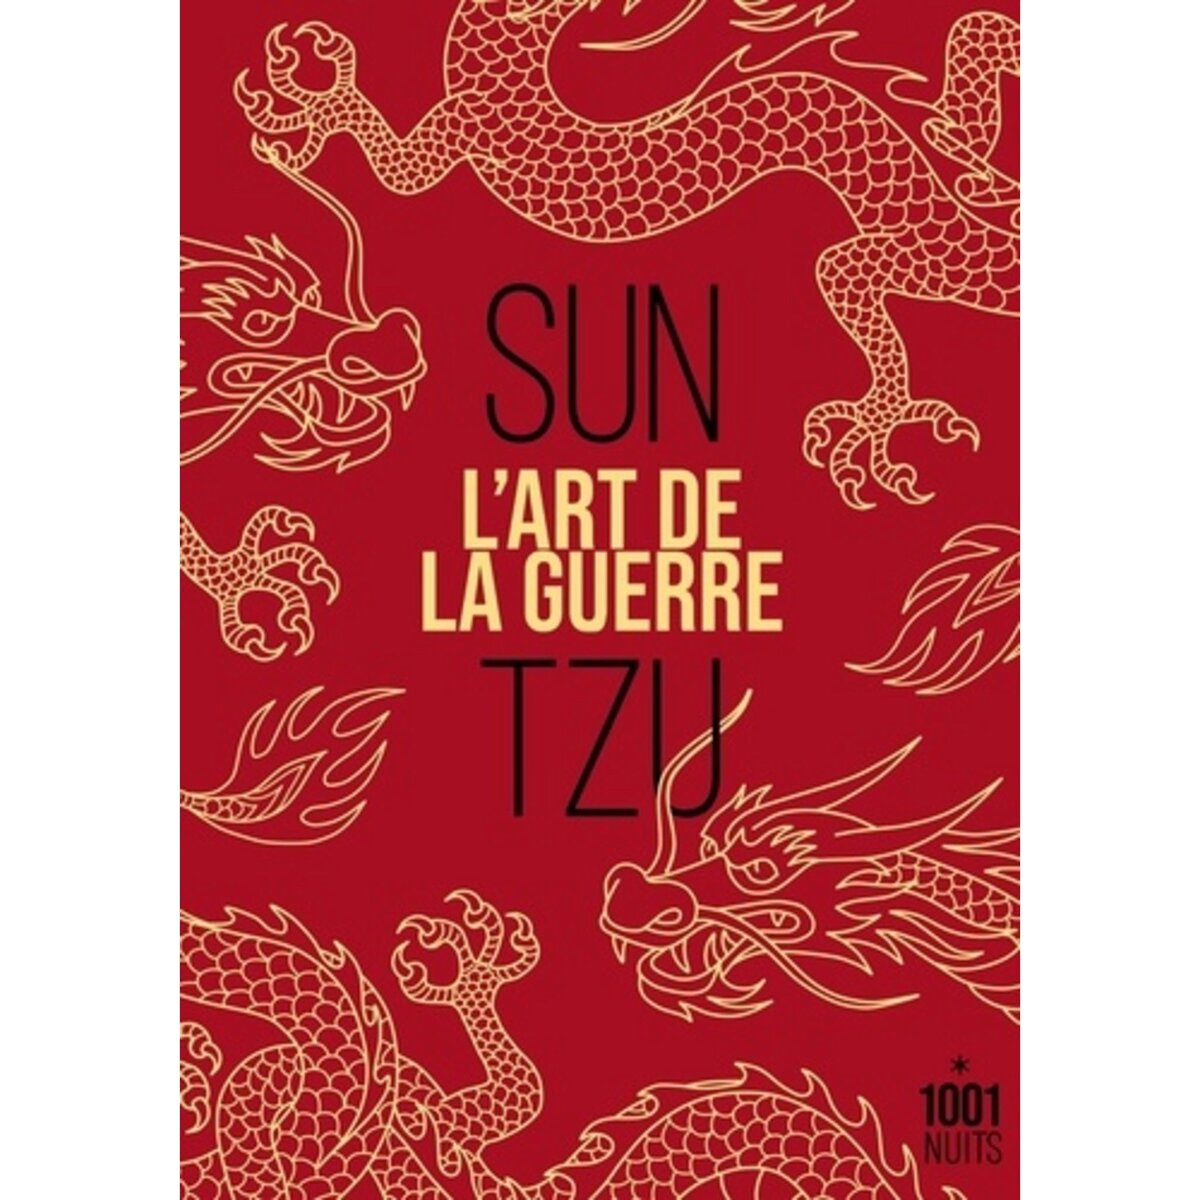  L'ART DE LA GUERRE, Sun Tzu